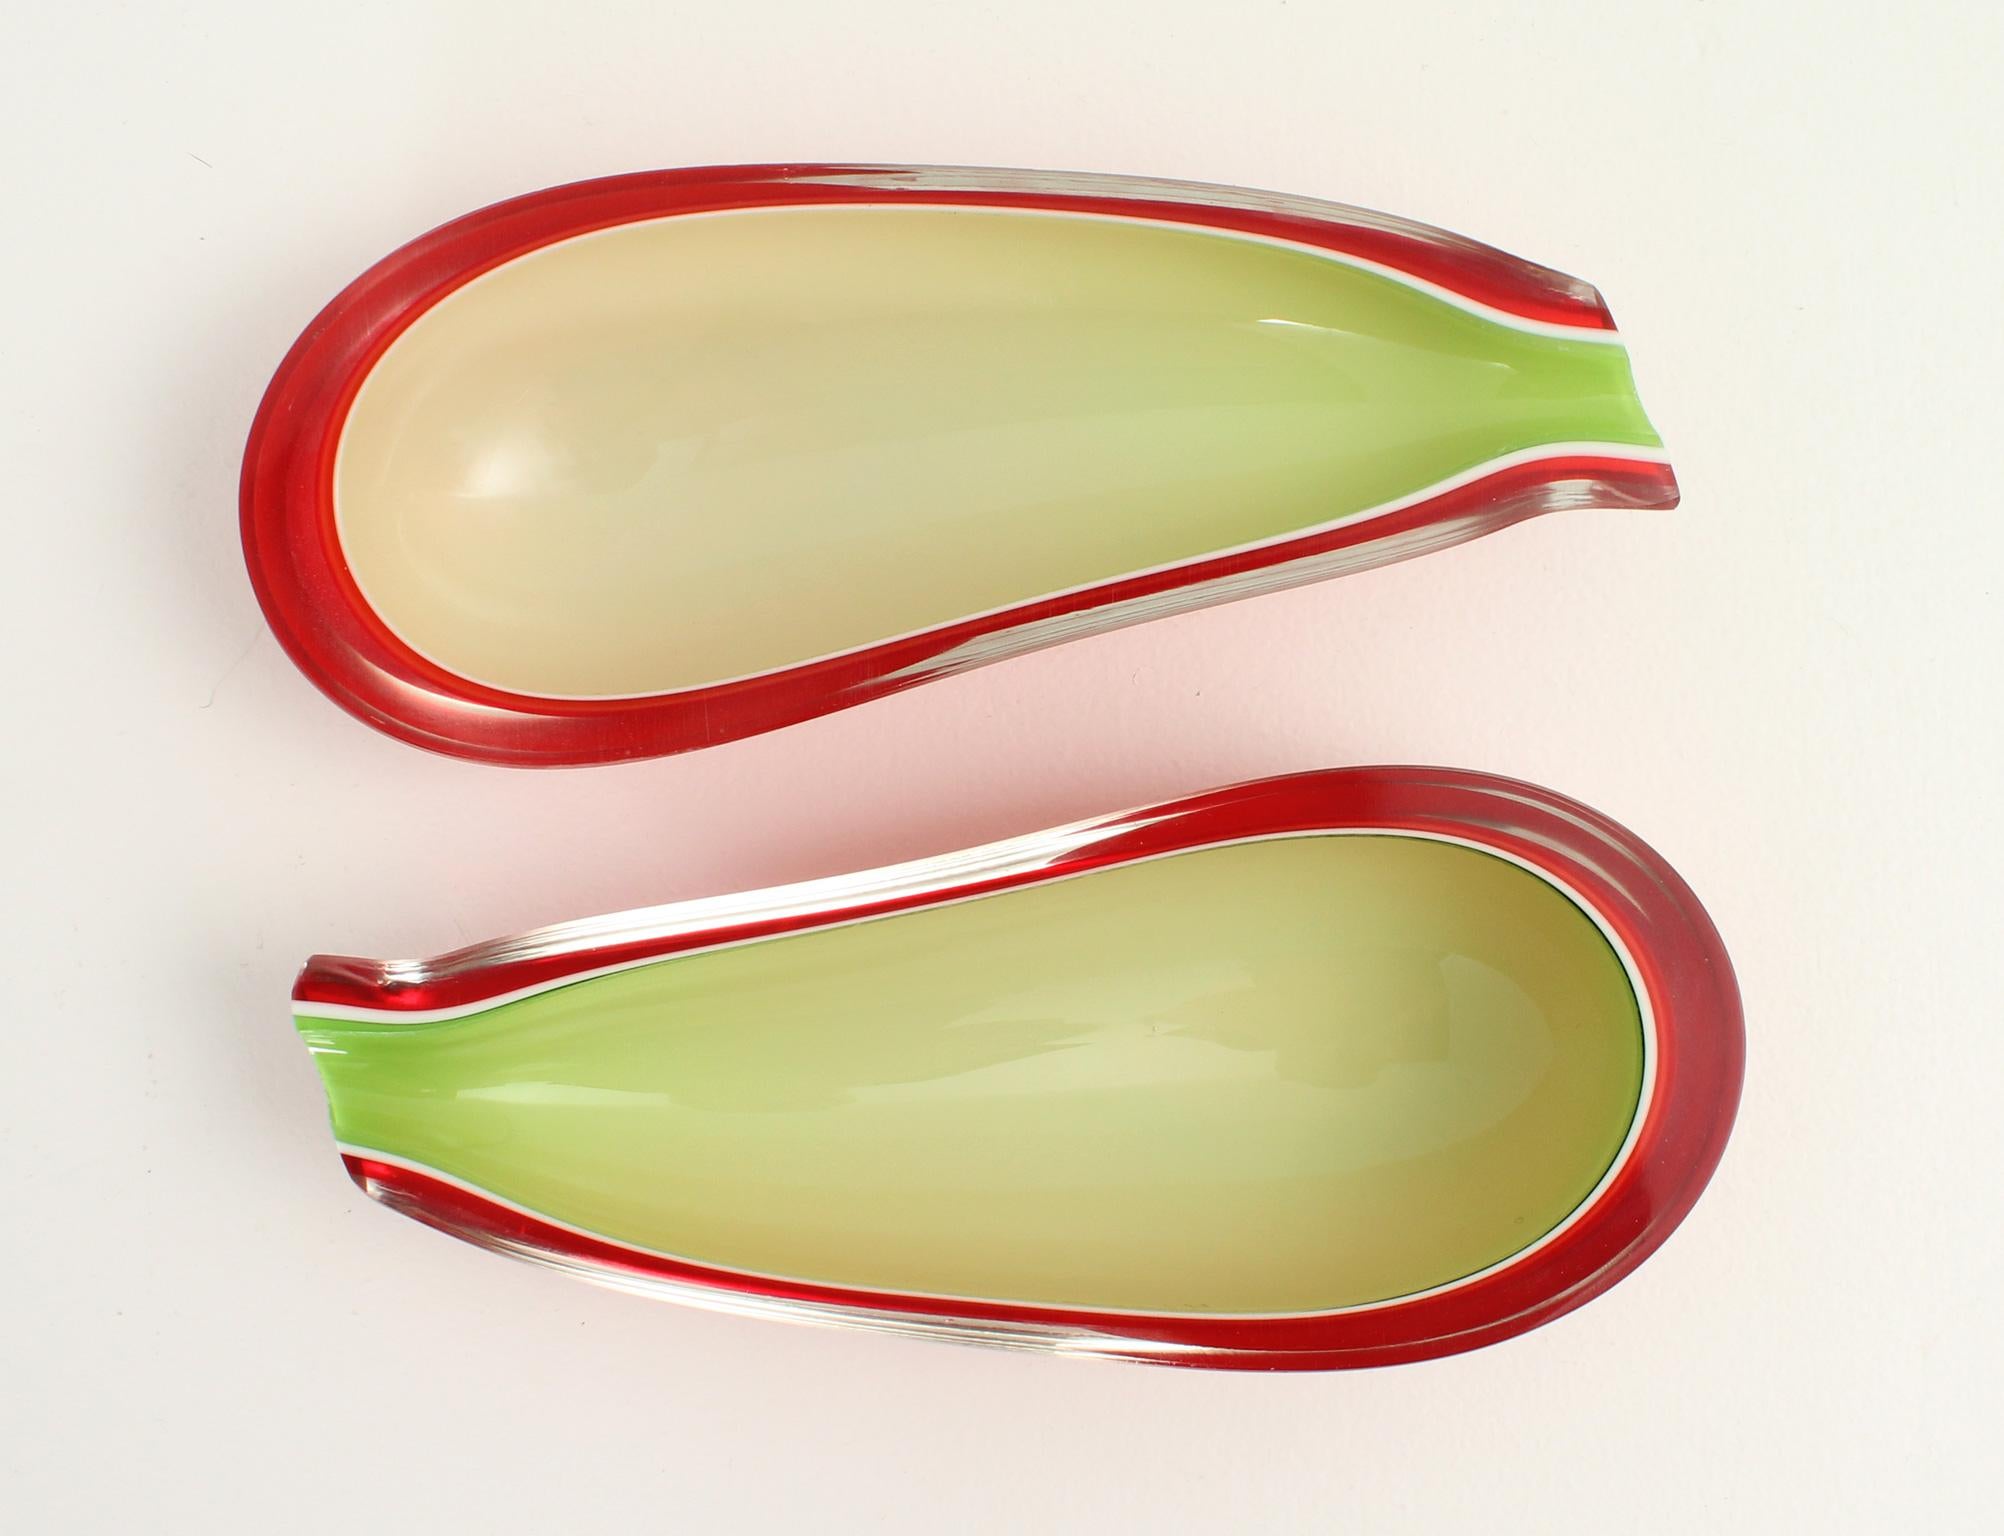 Schönes Paar Fratelli Toso Schalen oder Aschenbecher mit Auberginenformen, Murano, Italien, 1950er Jahre. Handgeblasenes Glas mit vier Schichten aus farbigem und klarem Glas.